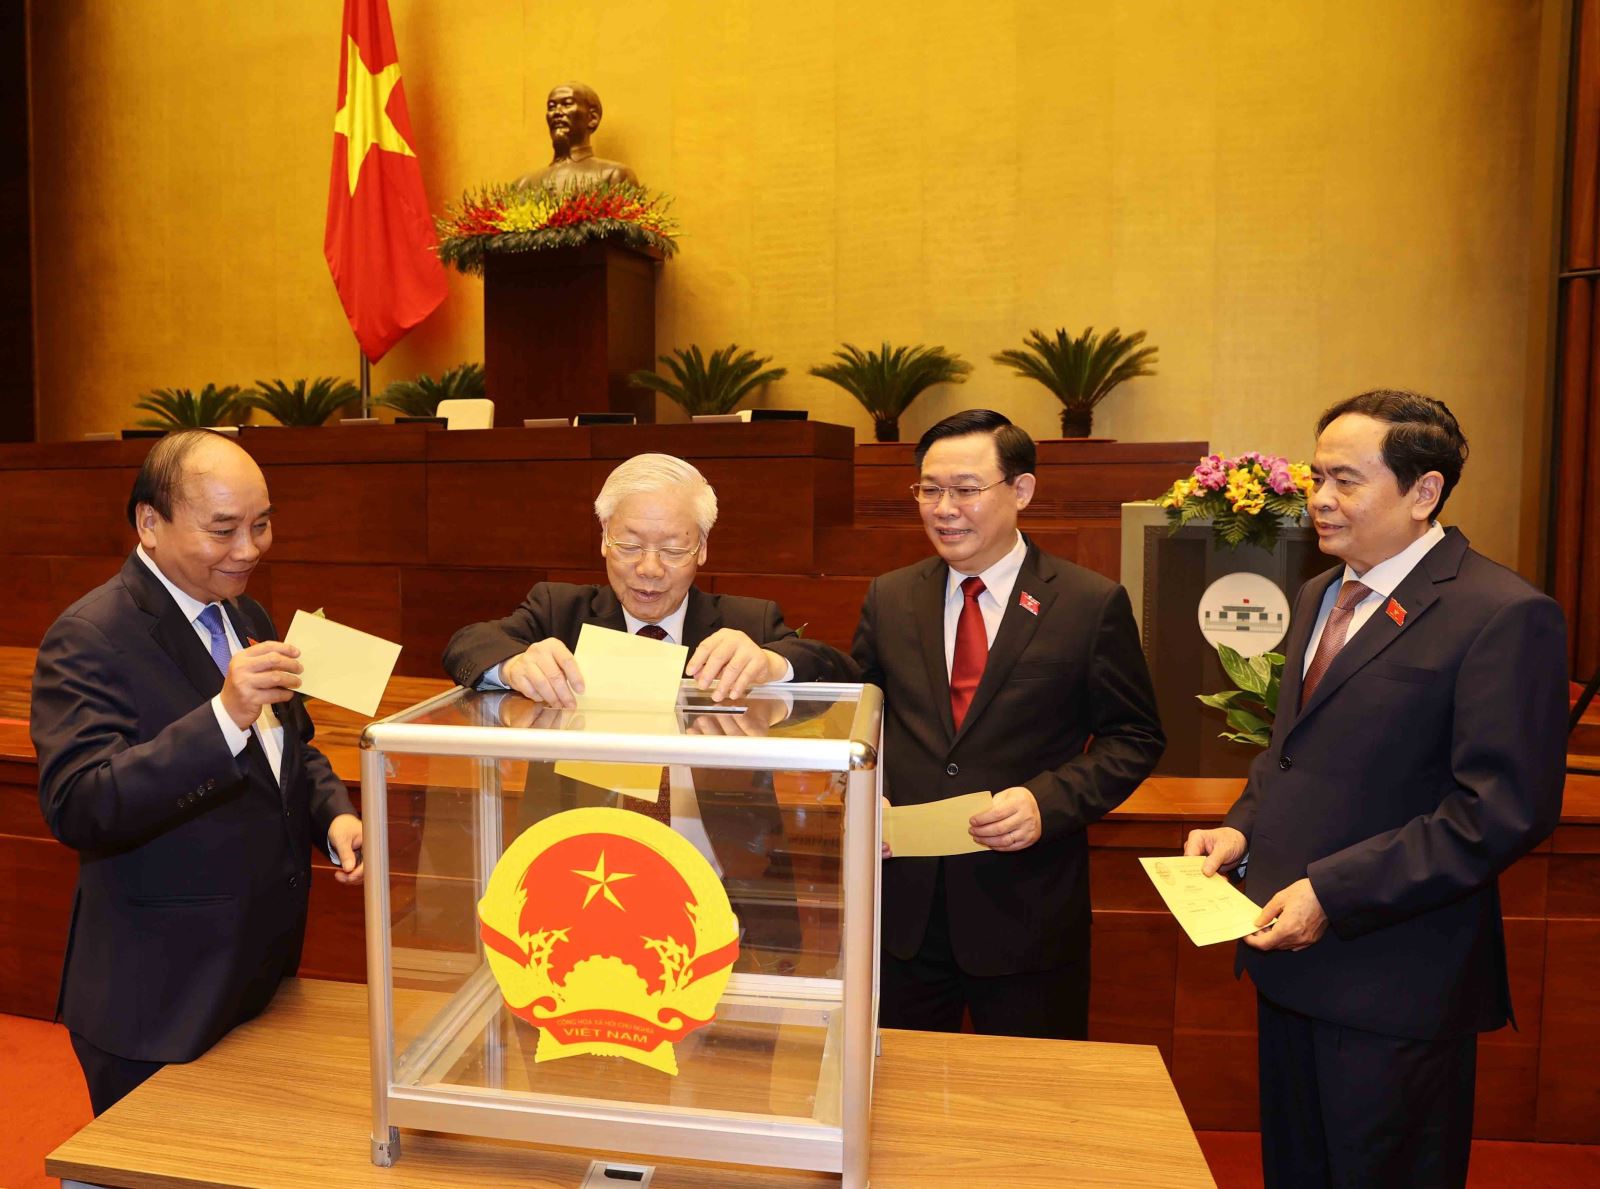 Đồng chí Phạm Minh Chính được Quốc hội bầu giữ chức Thủ tướng Chính phủ